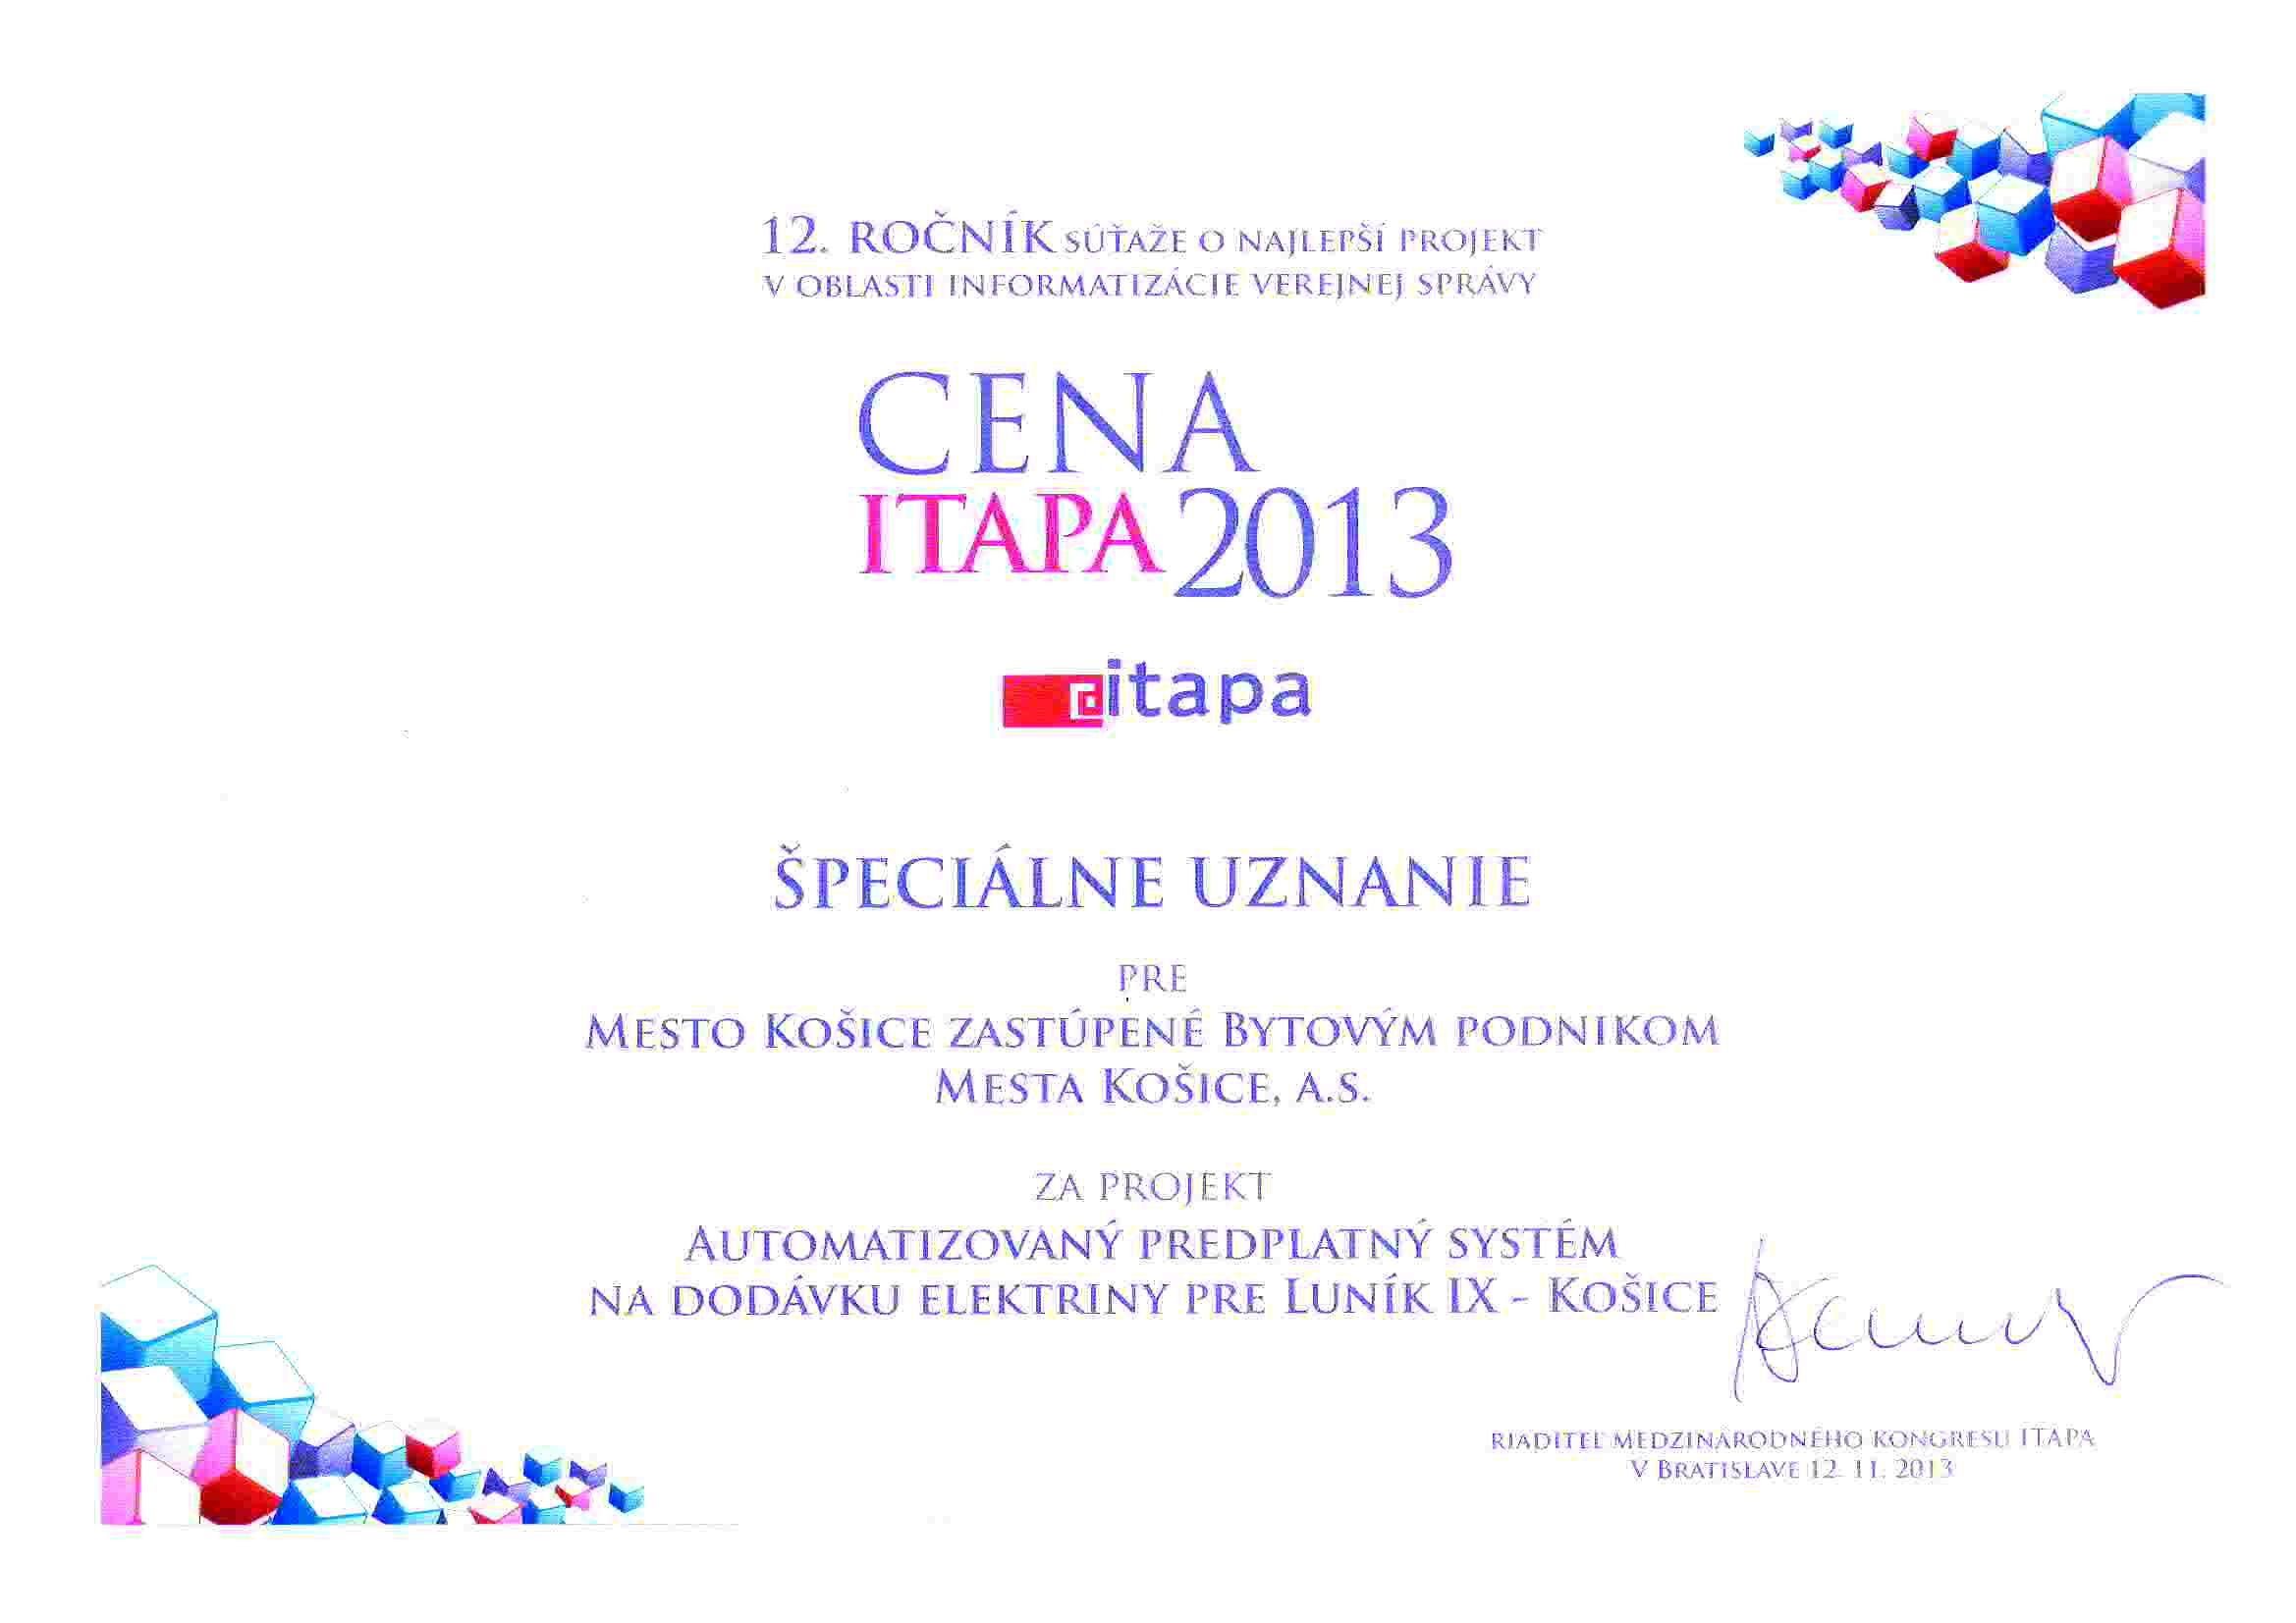 Cena ITAPA 2013